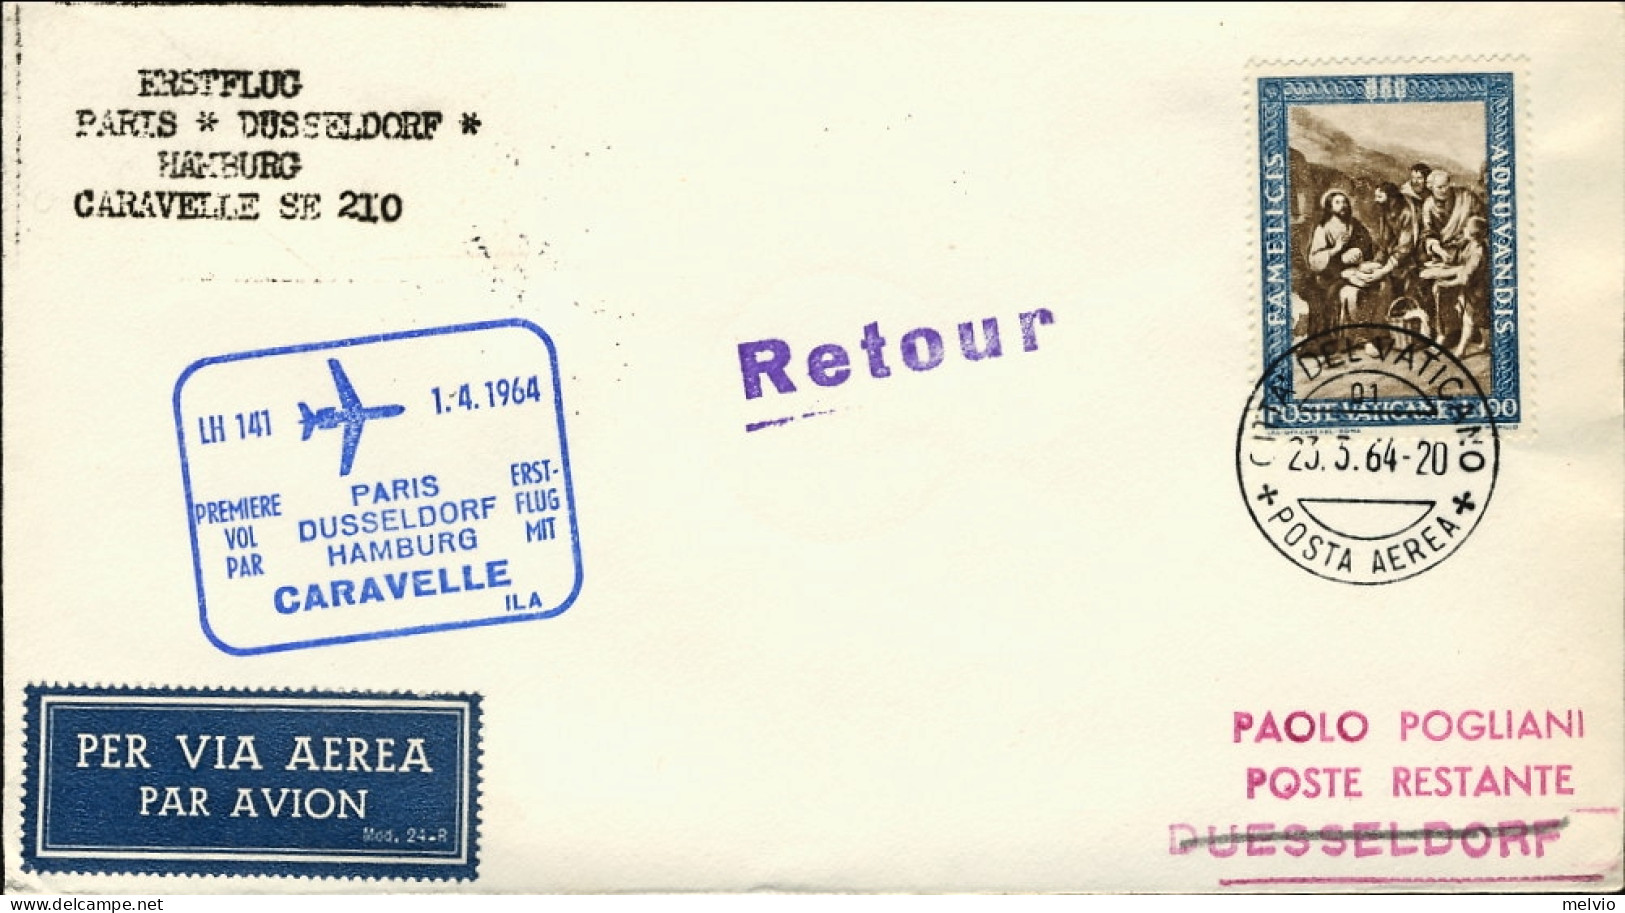 Vaticano-1964 I^volo Caravelle LH 141 Parigi Dusseldorf Amburgo Del 1 Aprile - Airmail